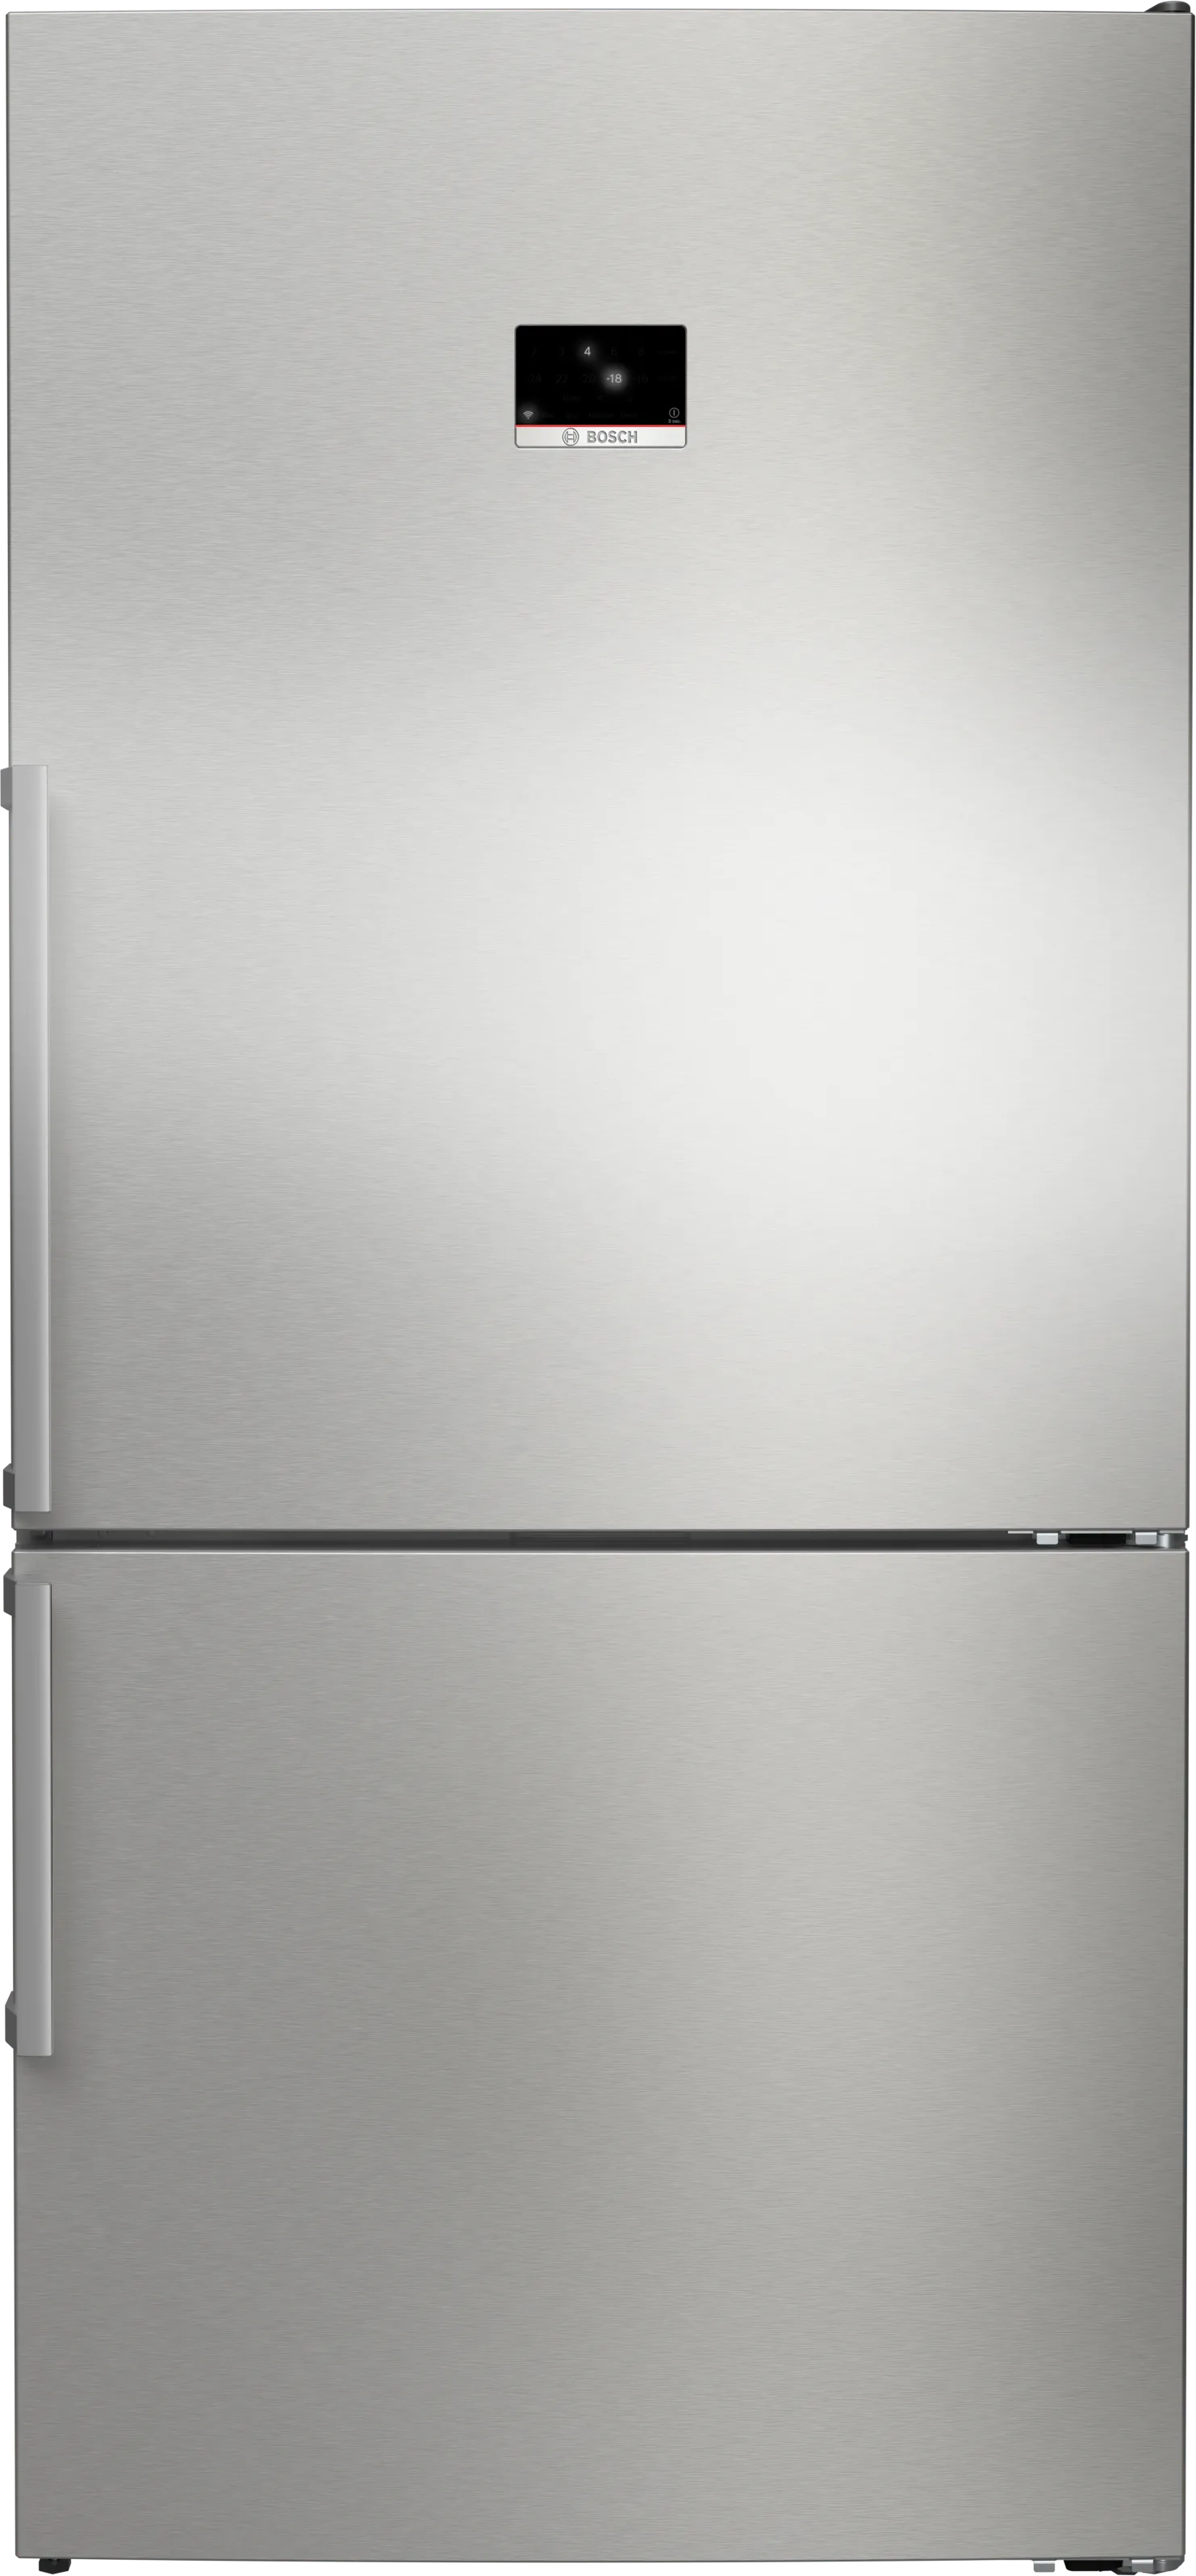 Serie 8 Freistehende Kühl-Gefrier-Kombination mit Gefrierbereich unten 186 x 86 cm Gebürsteter Stahl mit Anti-Fingerprint 